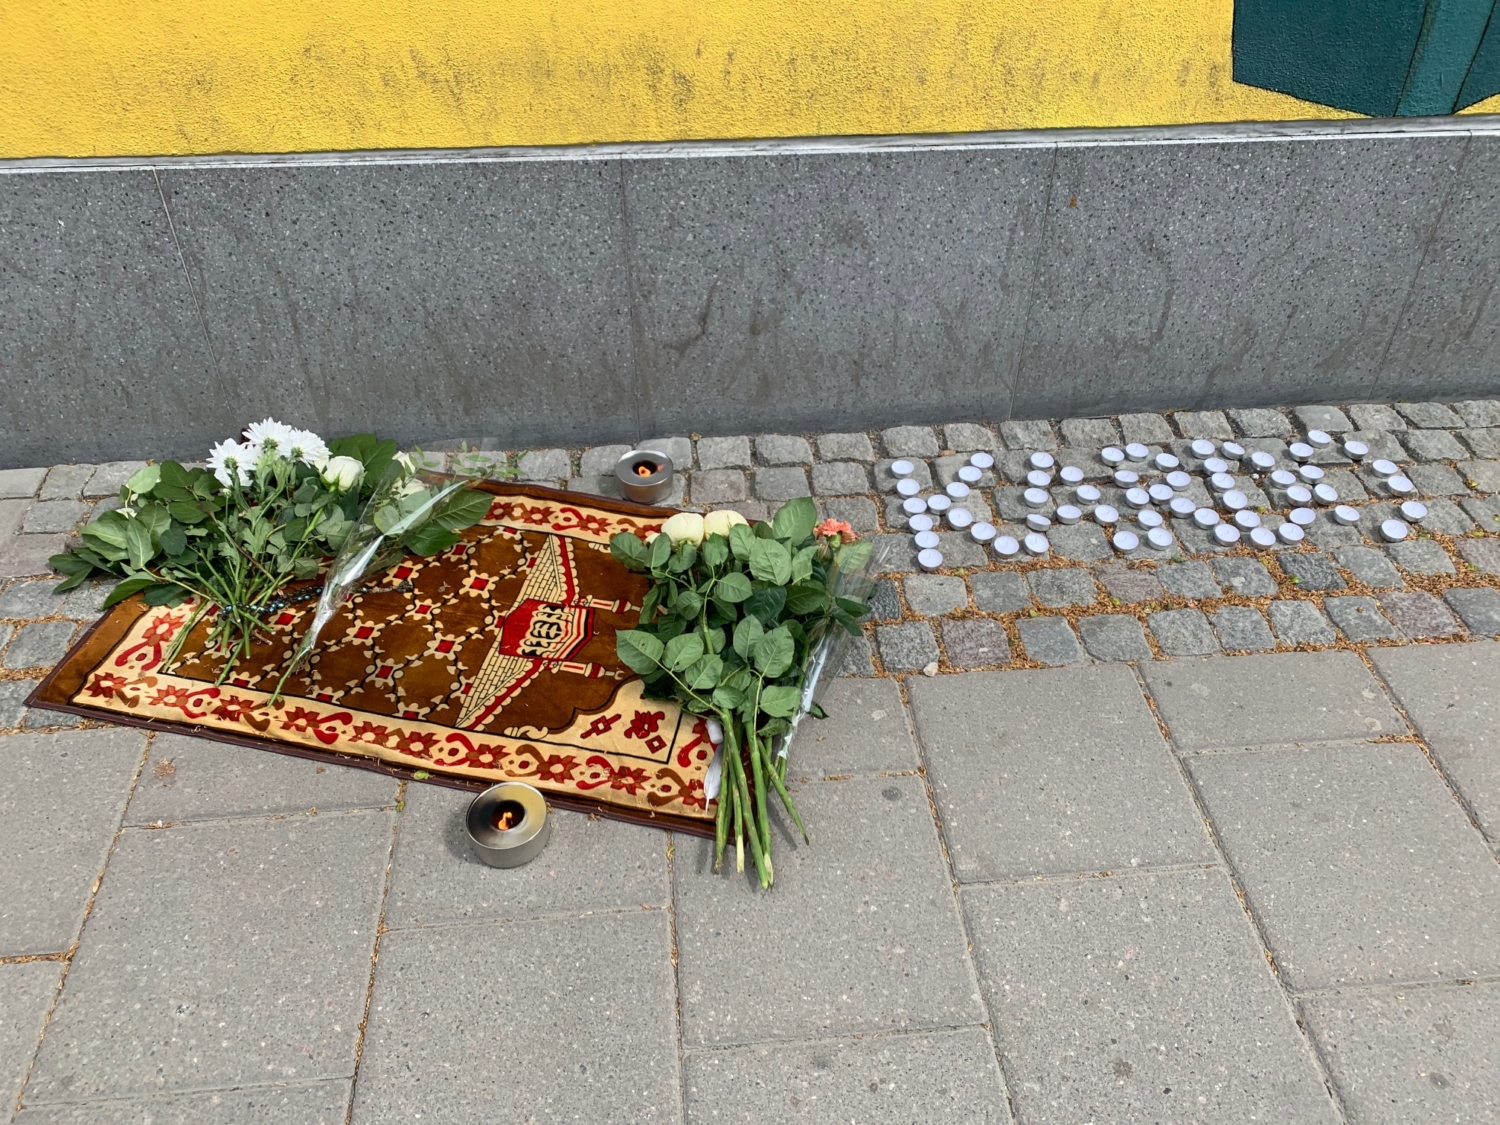 minnesplats efter den mördade i Husby. Blommor, en matta och värmeljus.